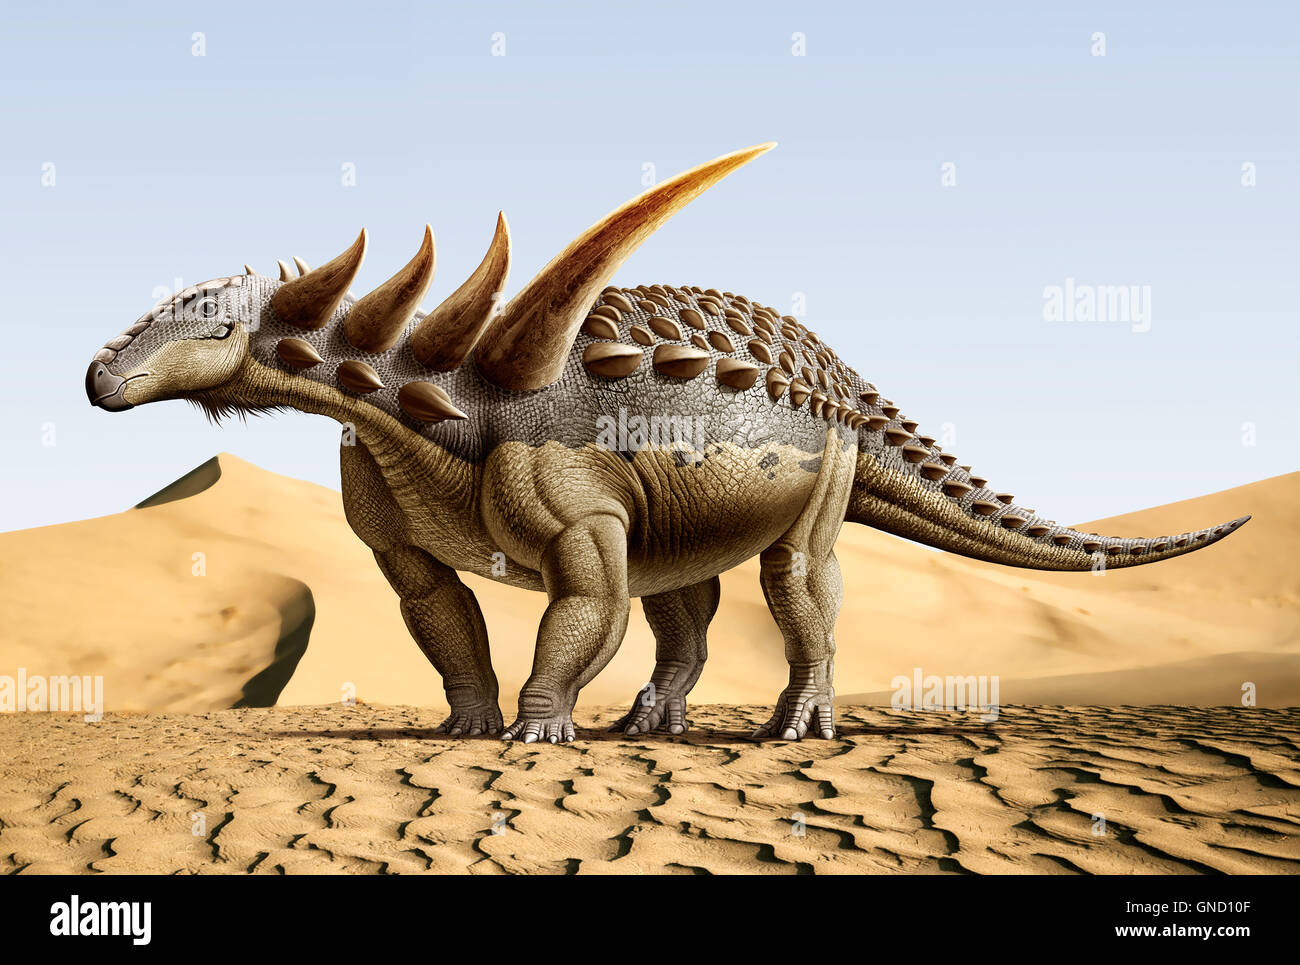 Sauropelta, è un dinosauro nodosaurid che esisteva già nei primi anni del periodo Cretaceo Foto Stock